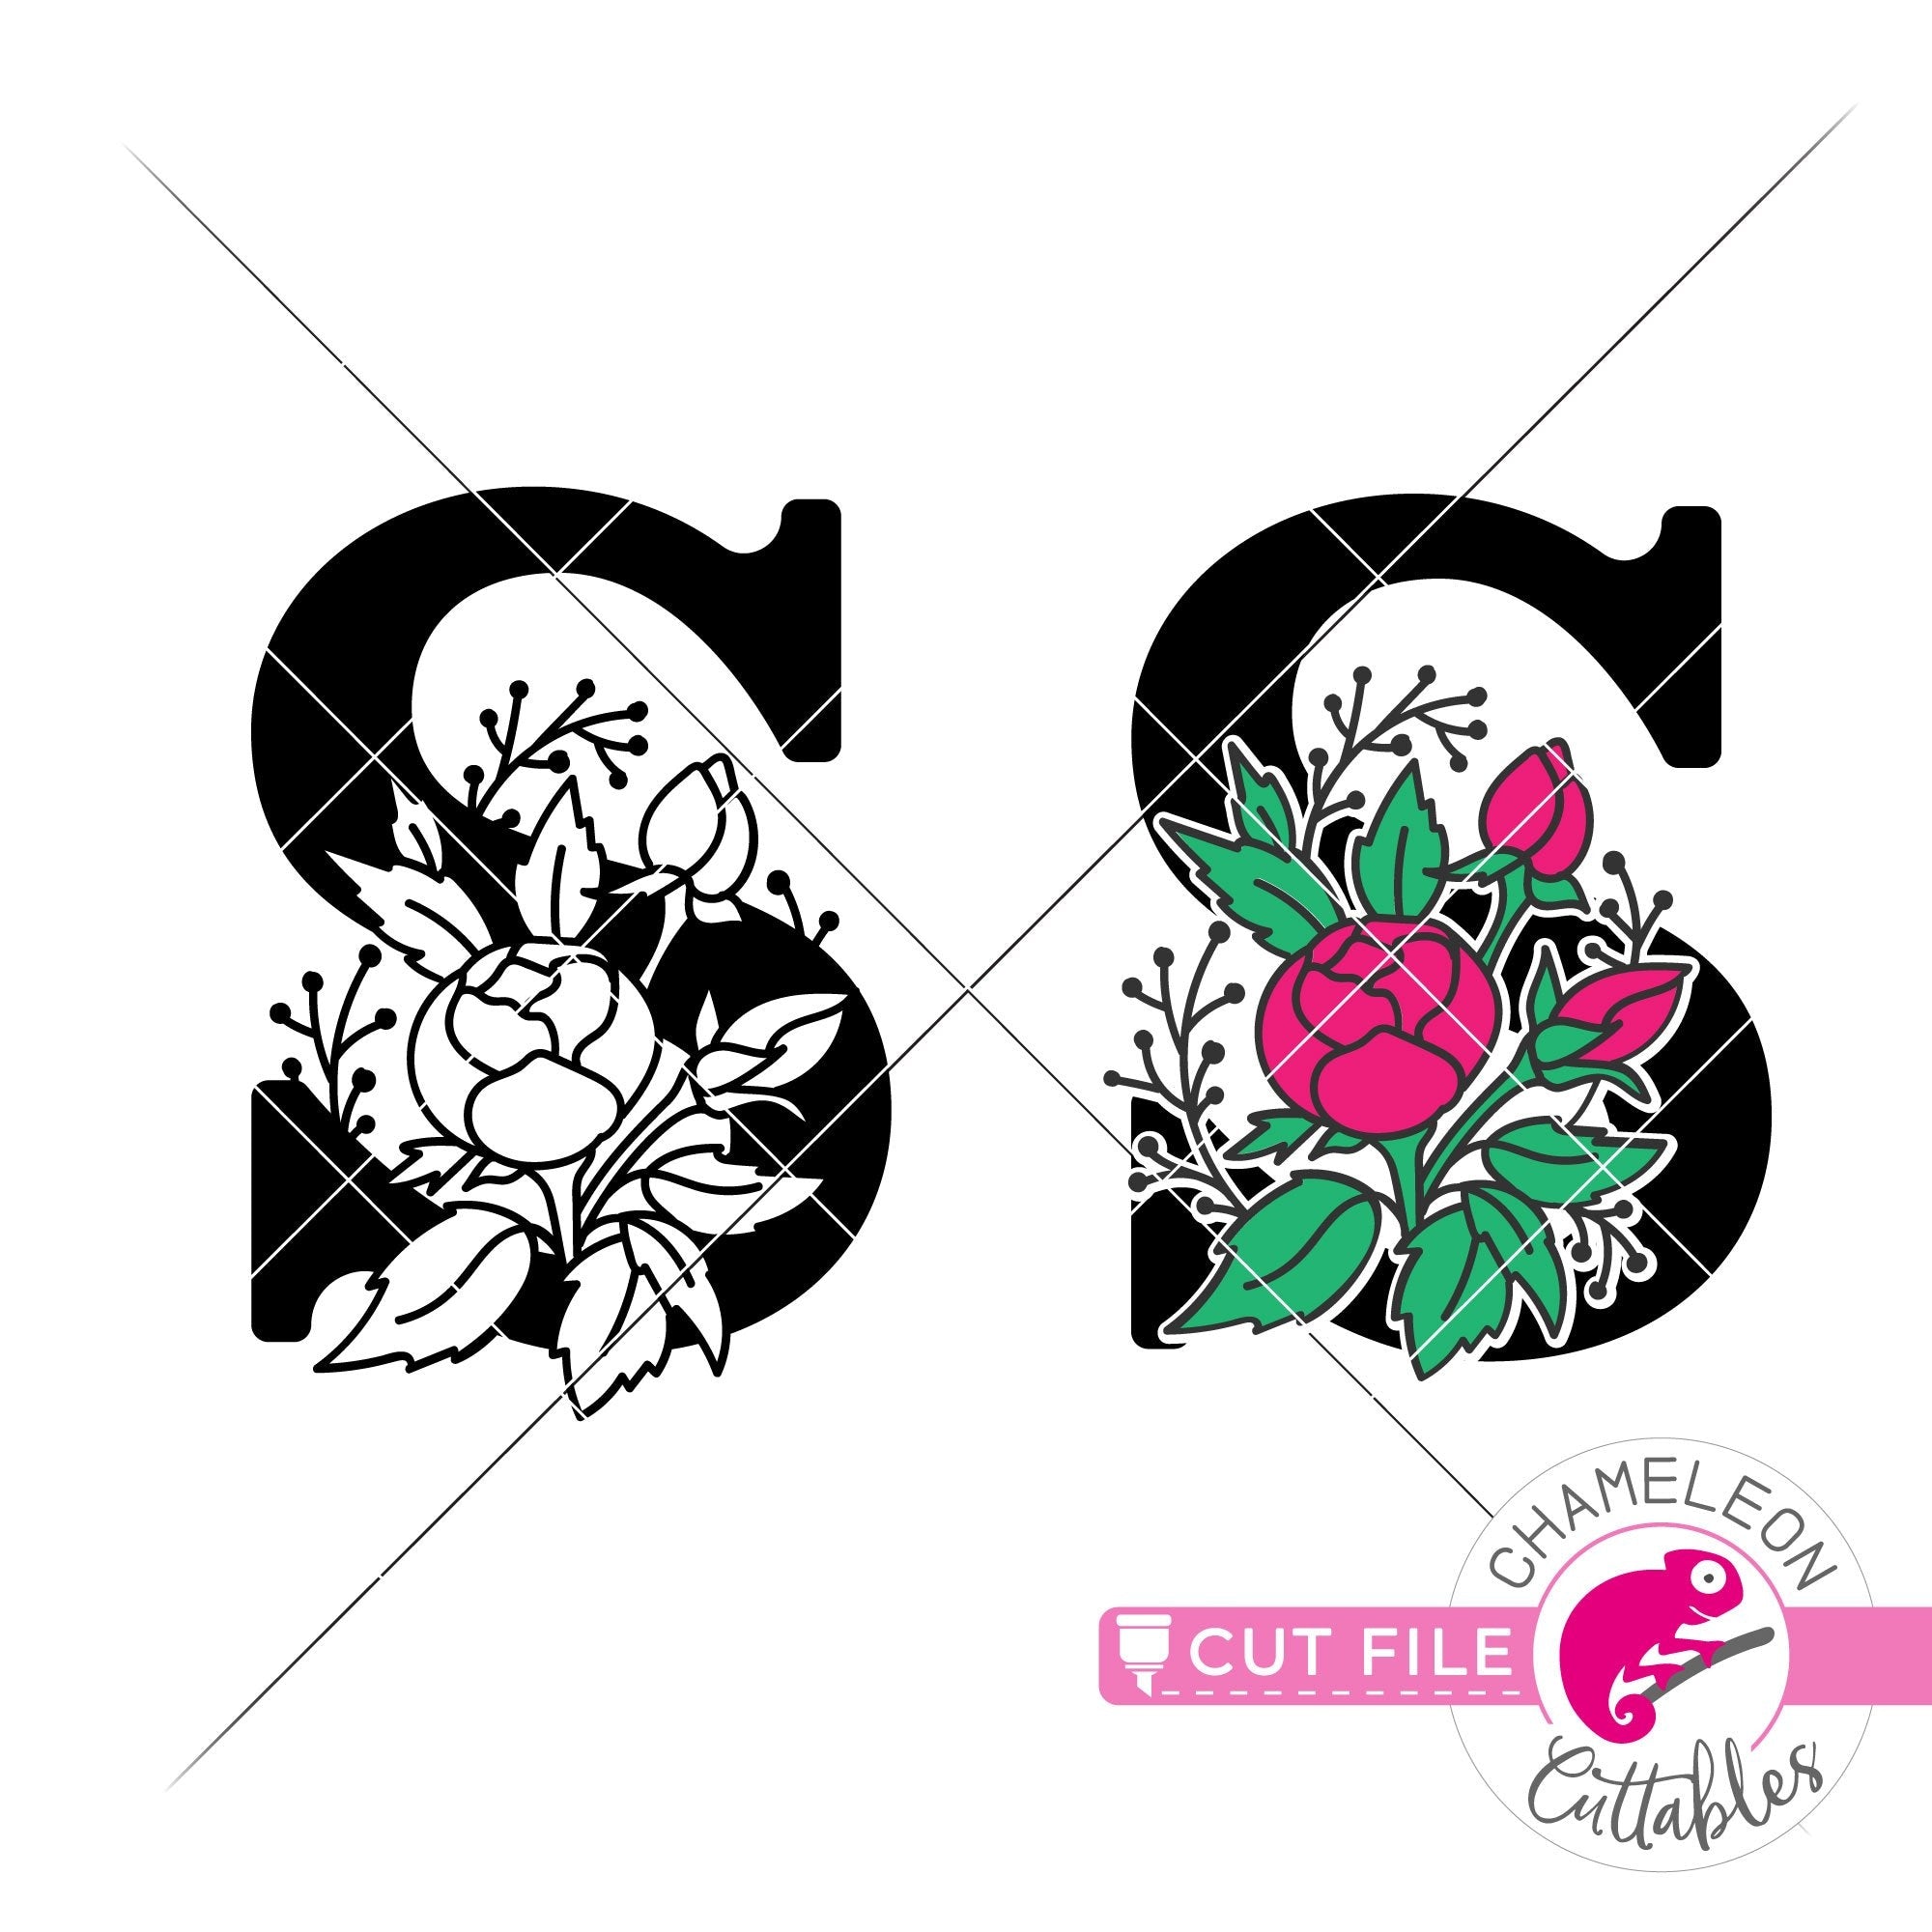 Download S Floral Monogram Letter With Flowers Svg Png Dxf Eps Jpeg Chameleon Cuttables Llc Chameleon Cuttables Llc